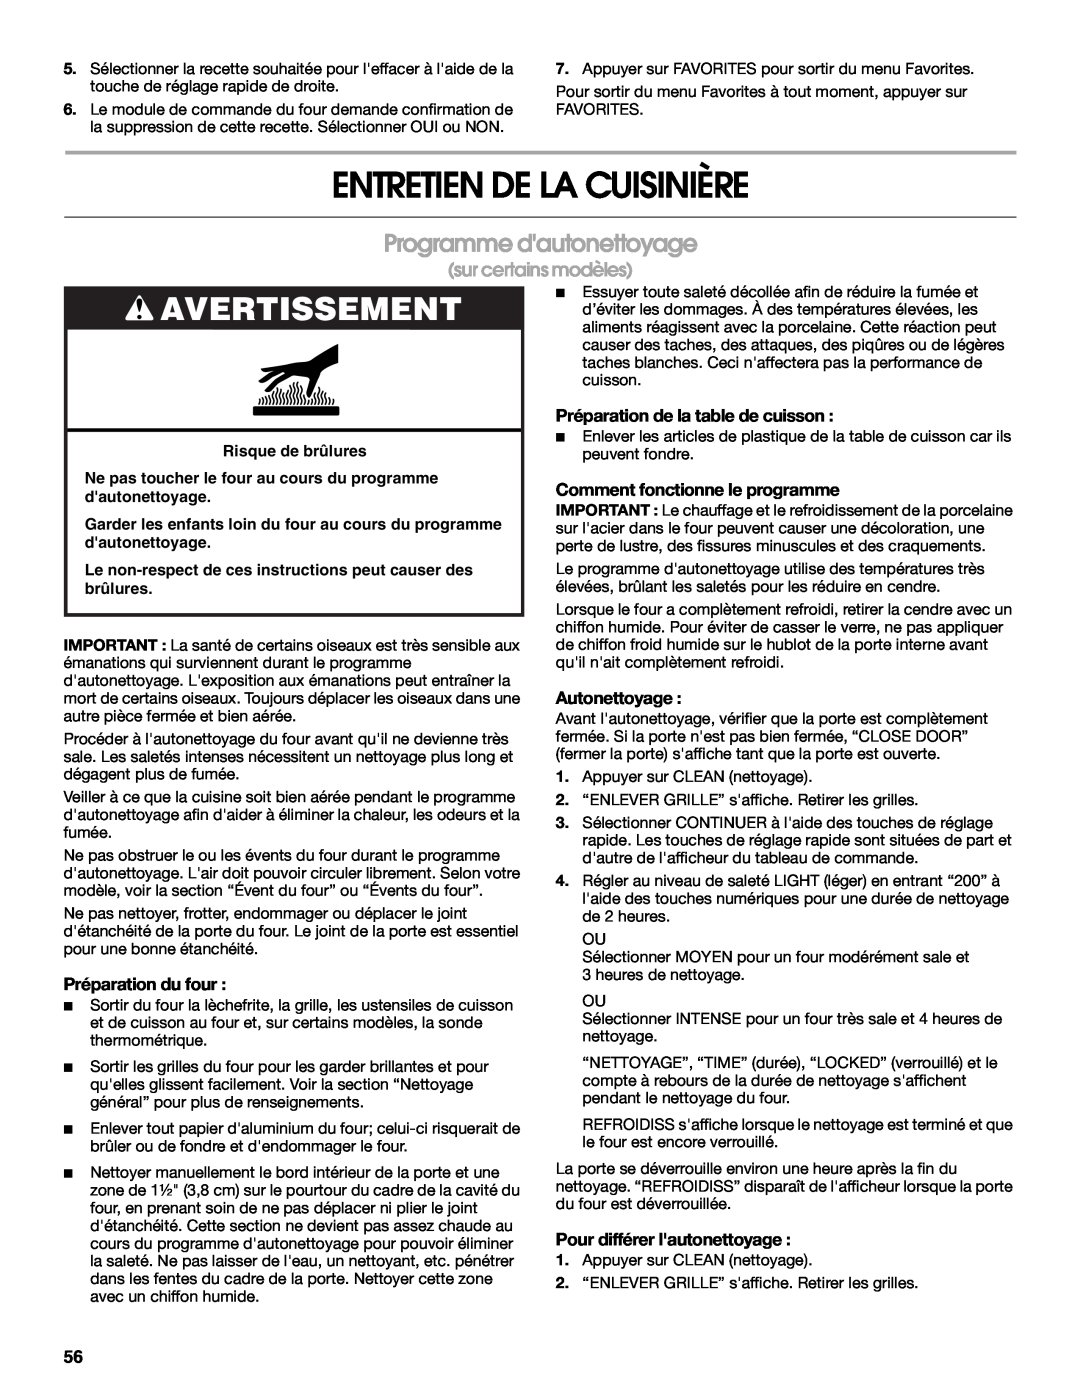 Jenn-Air JDS9865 Entretien De La Cuisinière, Programme dautonettoyage, Avertissement, sur certains modèles, Autonettoyage 